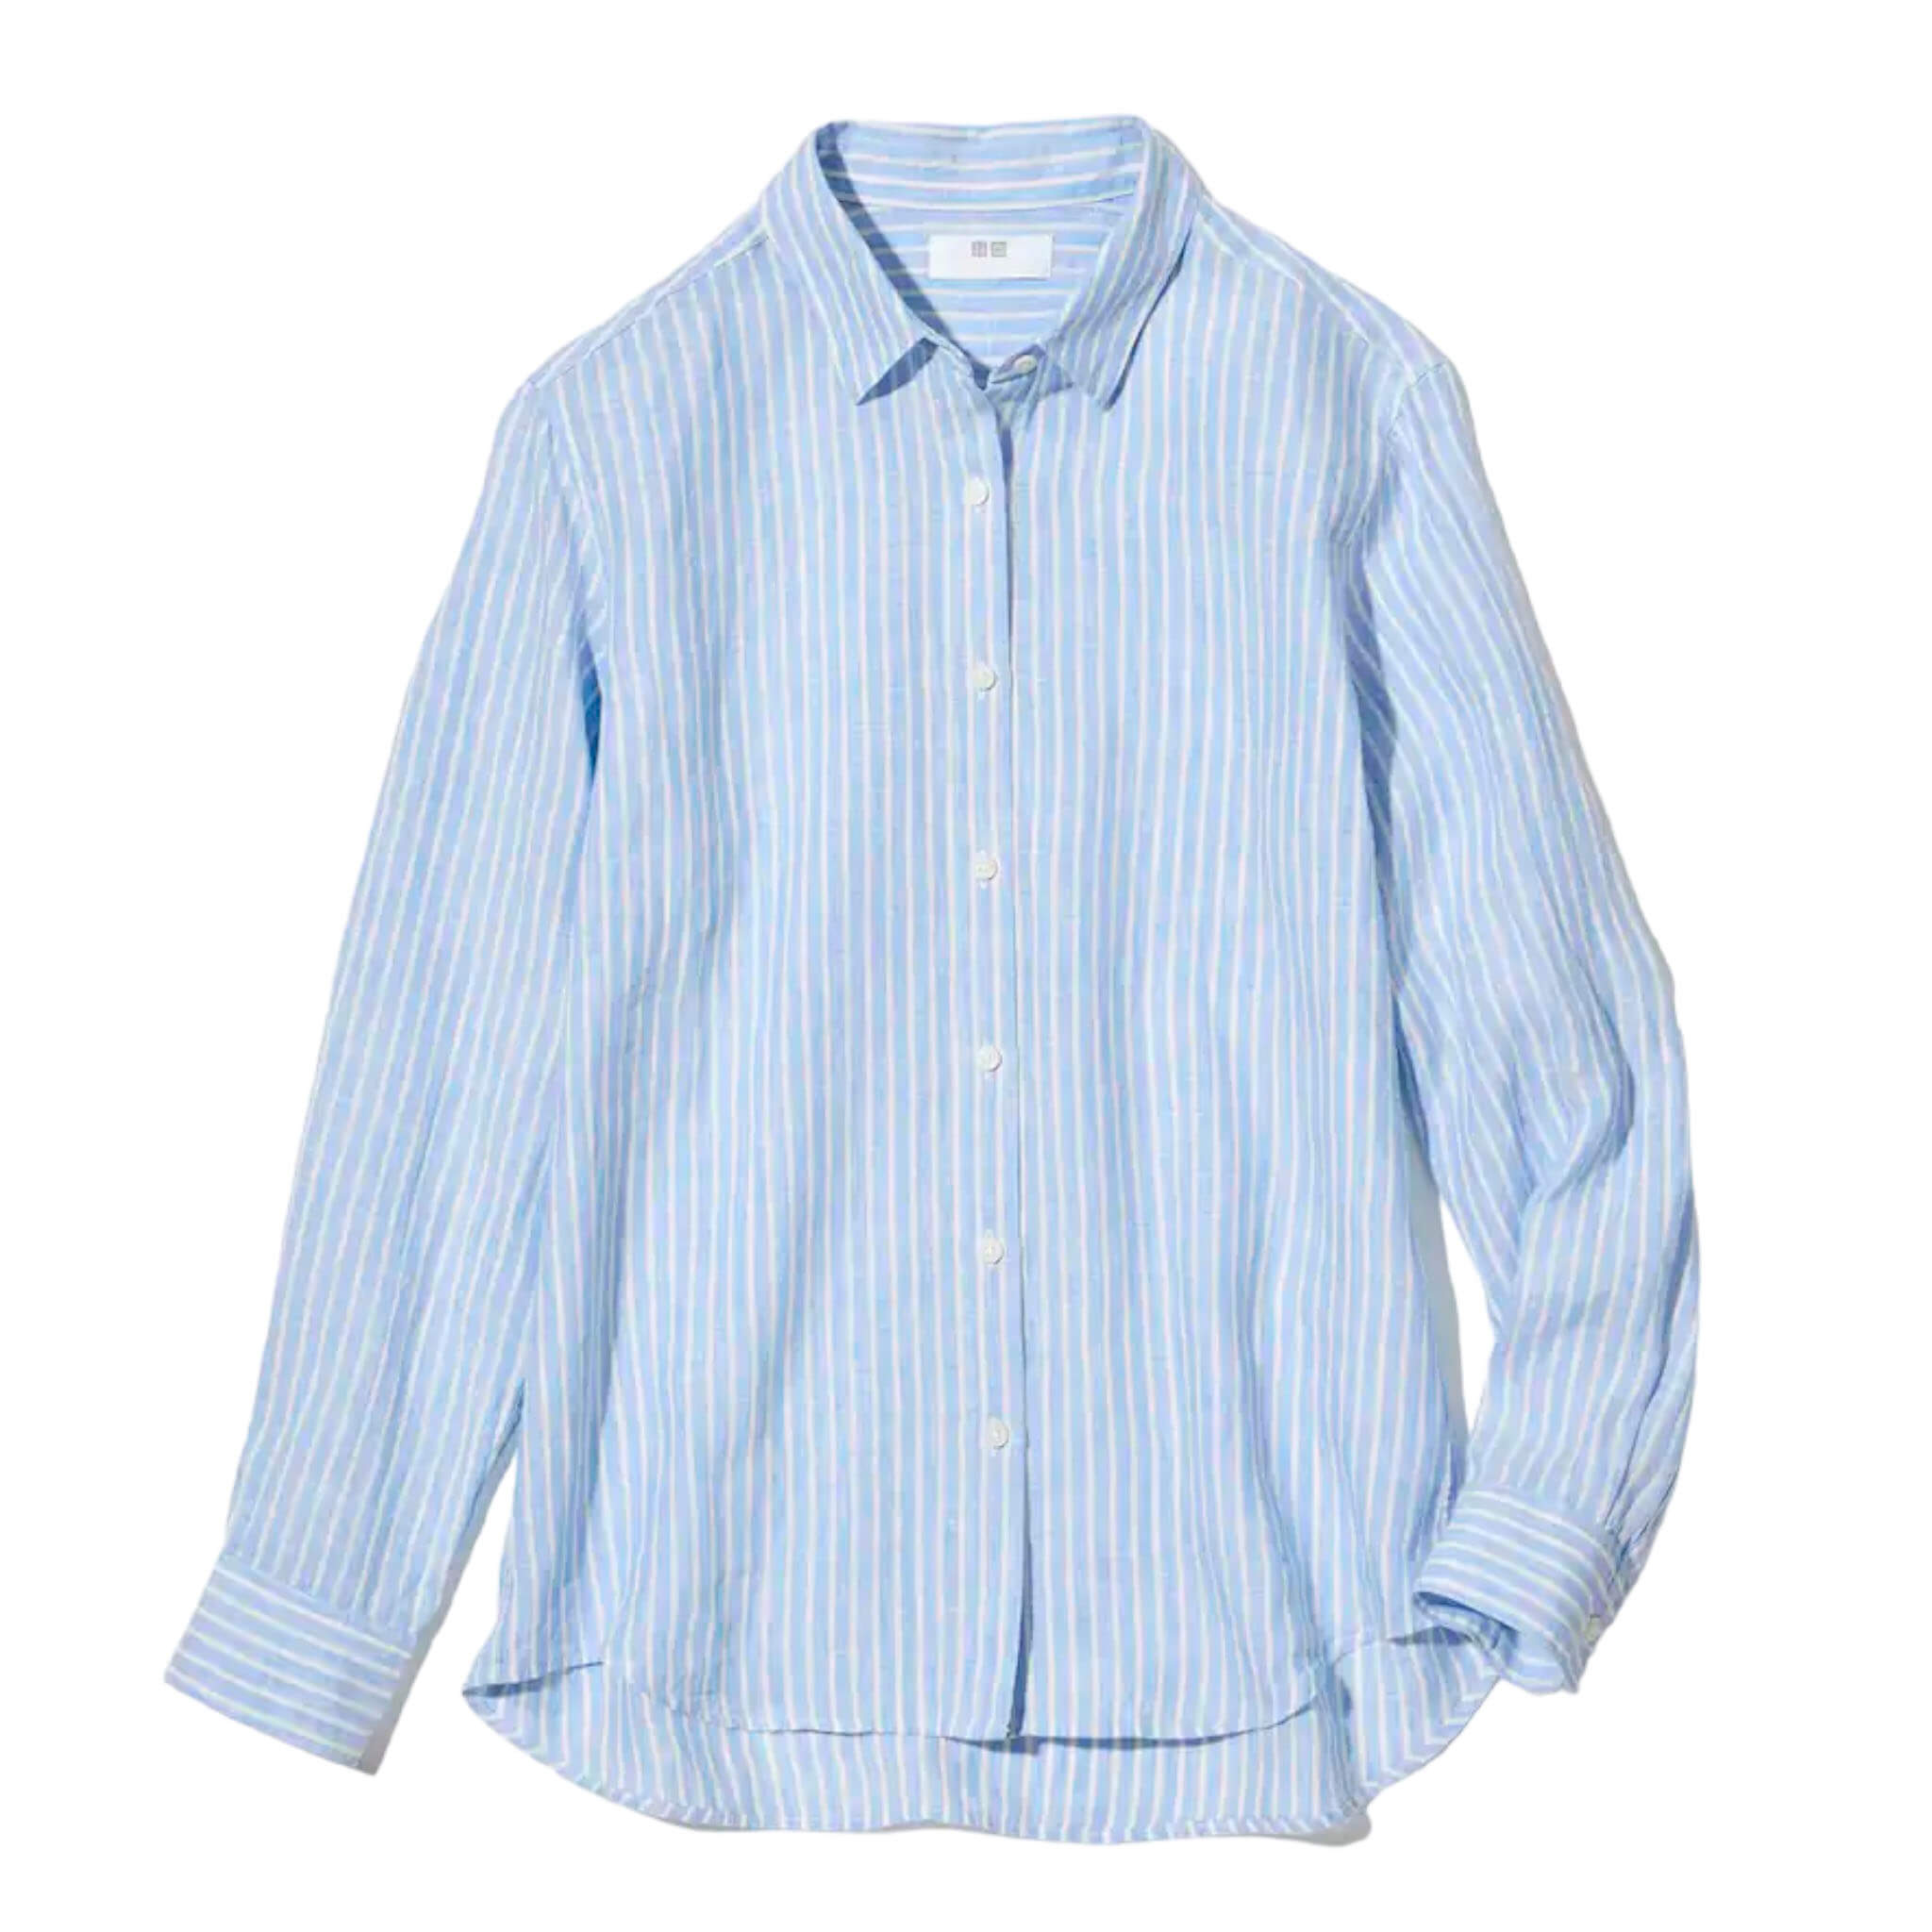 Рубашка Uniqlo Premium Linen Striped Long Sleeved, голубой рубашка uniqlo extra fine cotton striped голубой